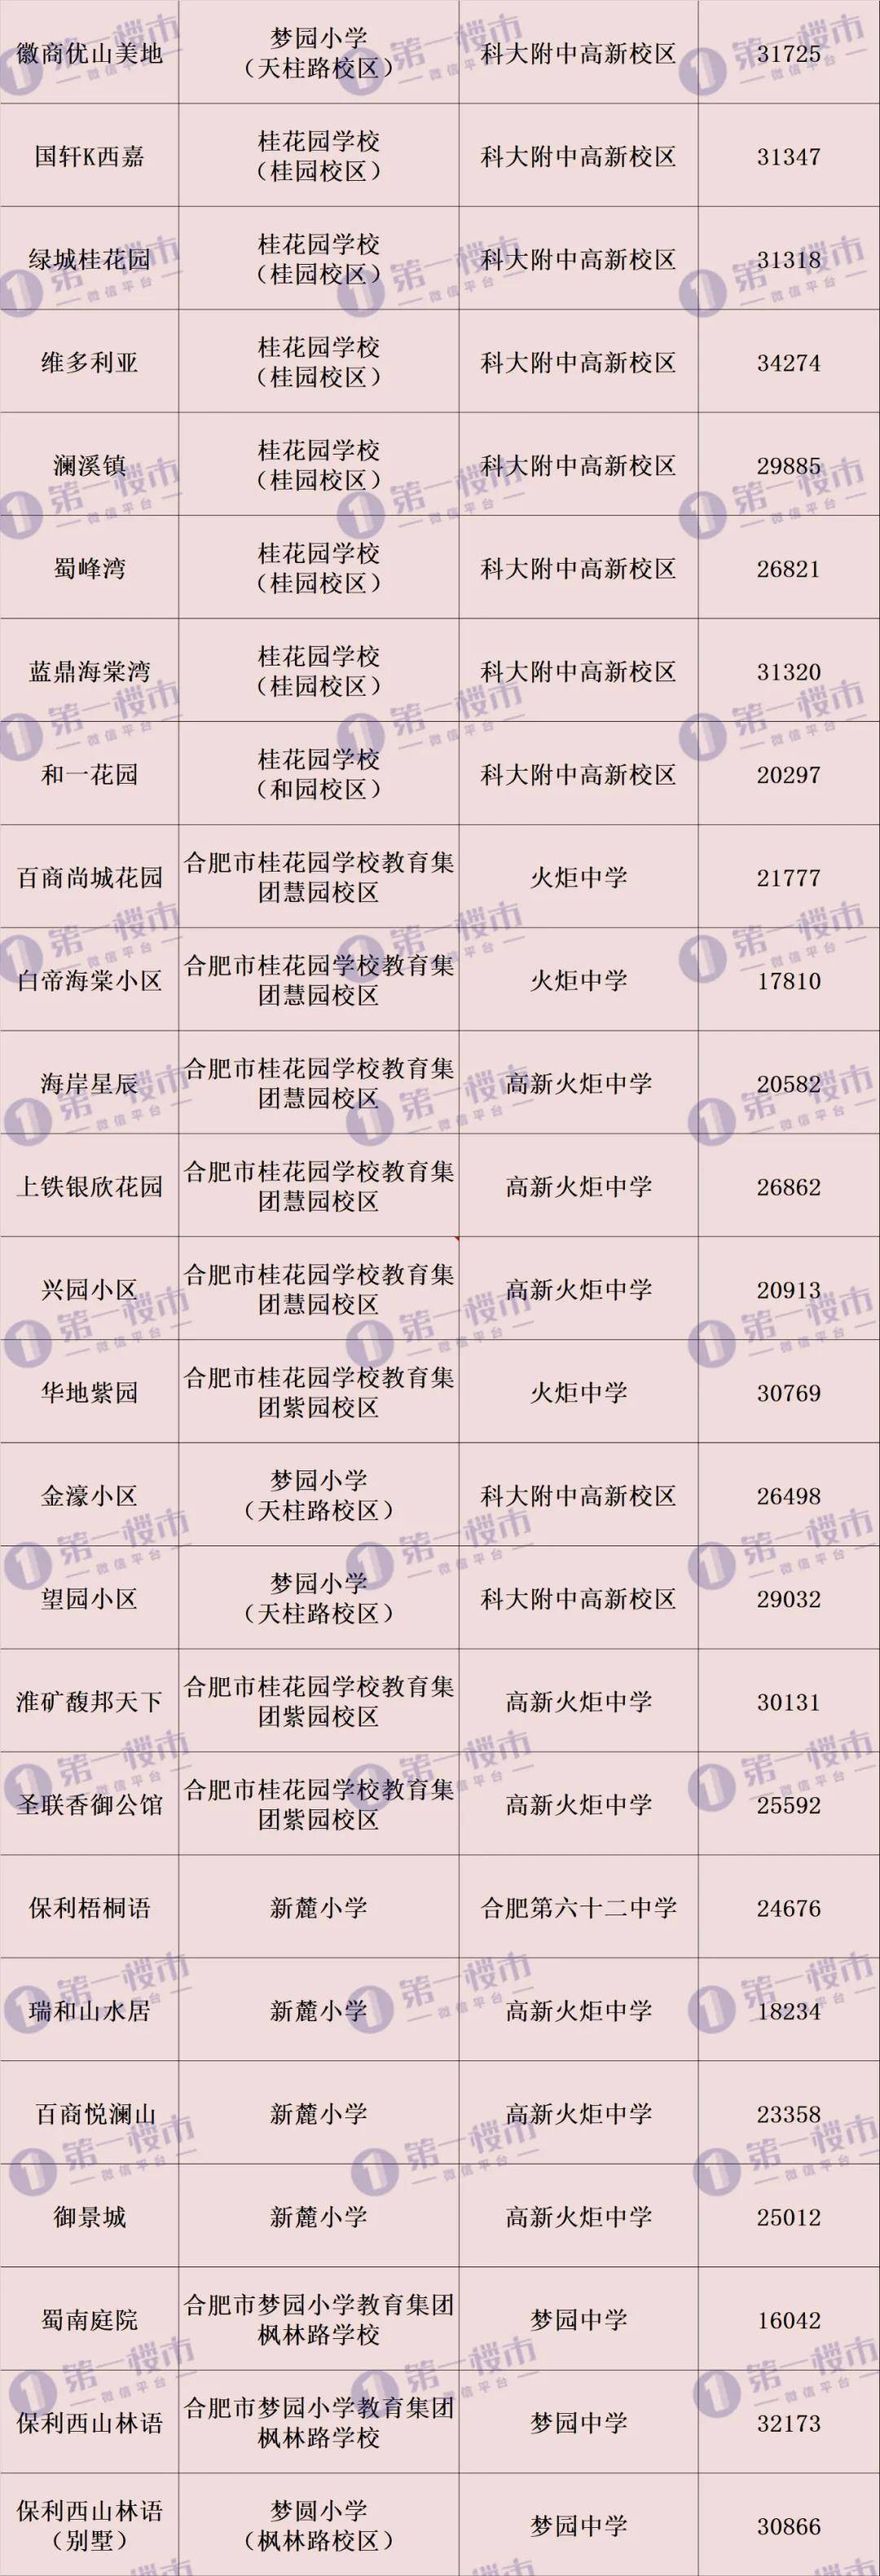 苏州学区房价格 搜狐_哈尔滨桐楠格领誉学区_益格名邸是哪个学区